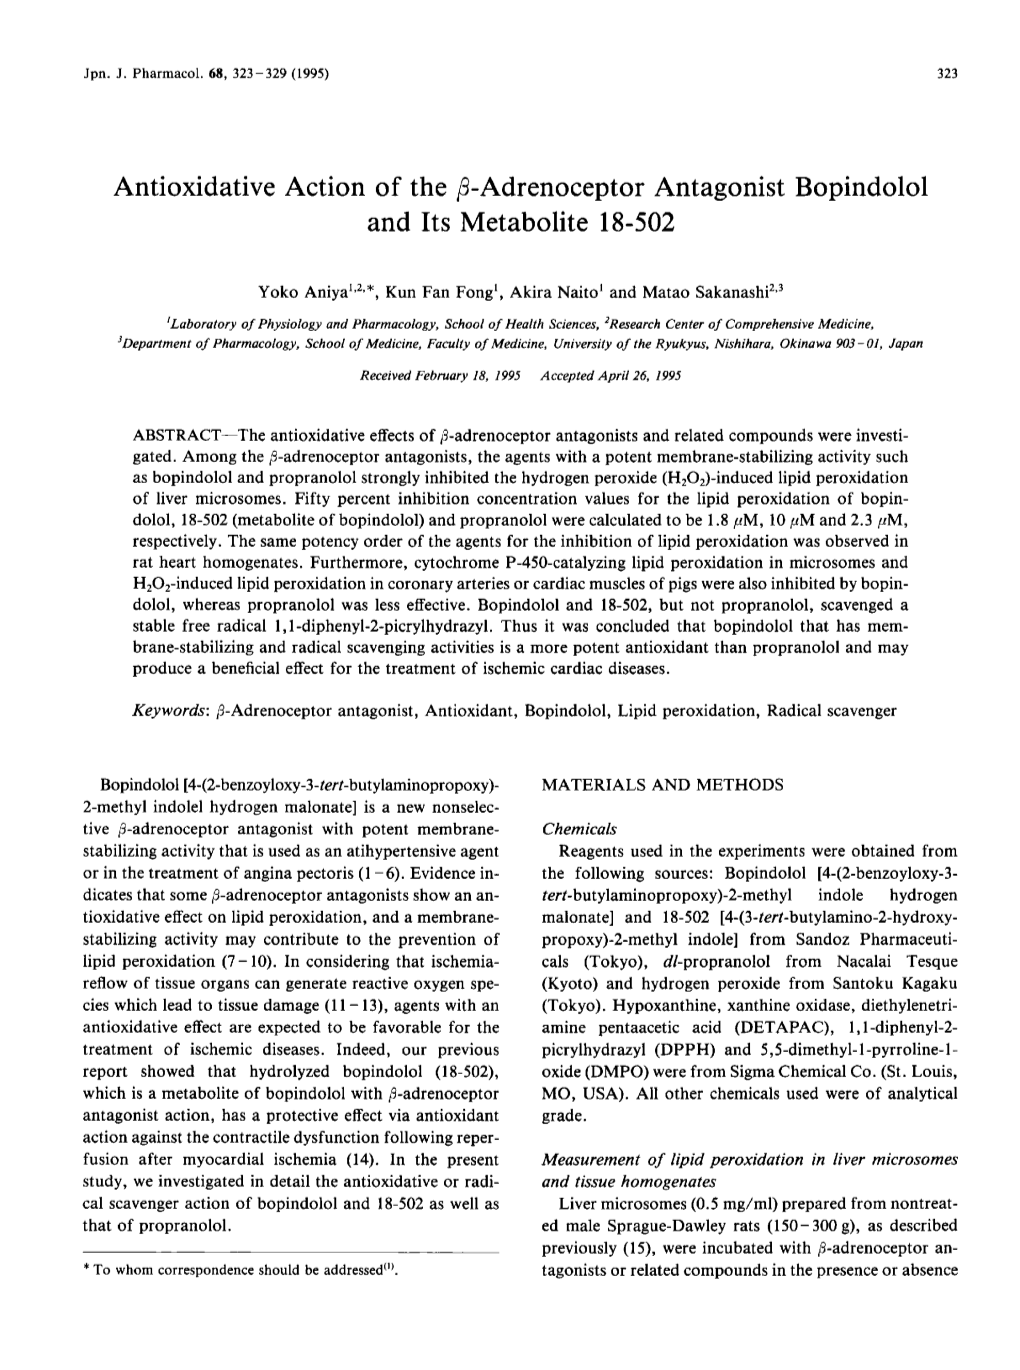 Adrenoceptor Antagonist Bopindolol and Its Metabolite 18-502